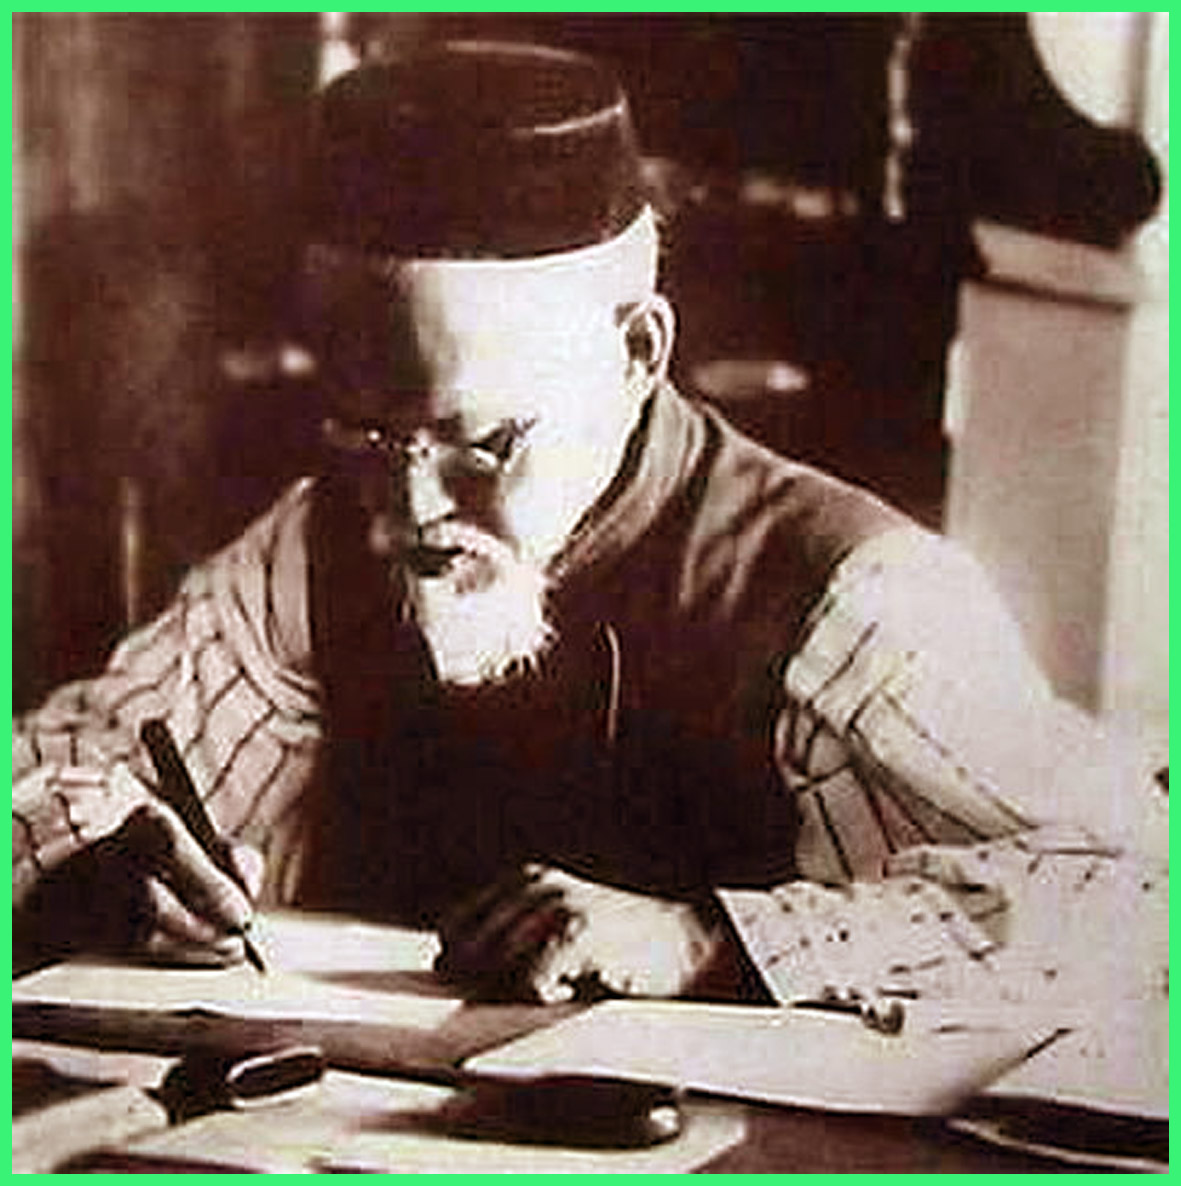 رضا الدين فخر الدين كان المفتي الروسي الرسمي منذ عام 1922 وحتى 1936م.